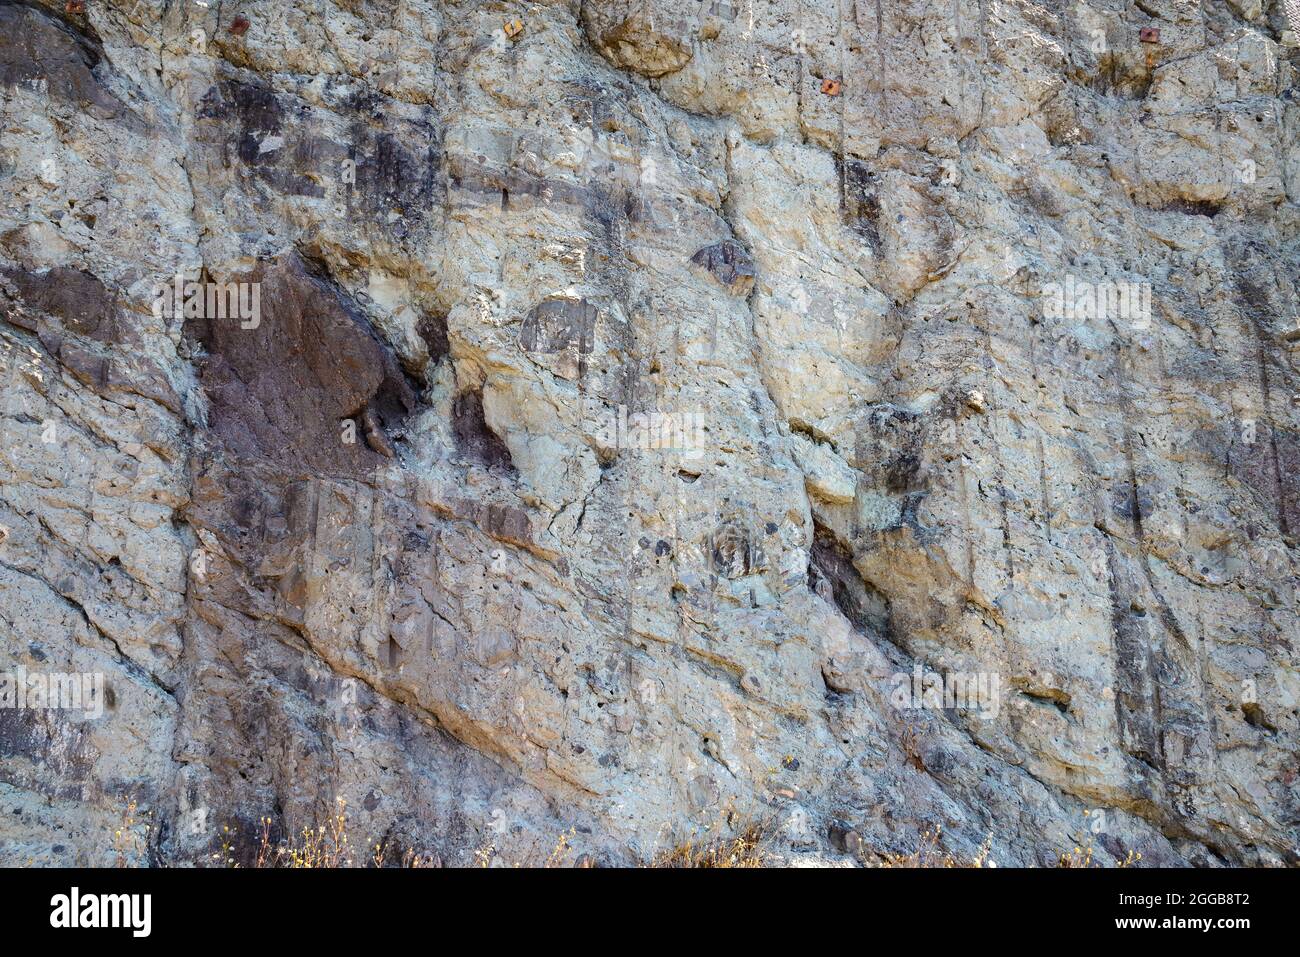 Pyroklastische Gesteine aus gemischten Gesteinsfragmenten und Asche, die sich während eines heftigen Vulkanausbruchs abgelagert haben. Oregon, USA. Stockfoto